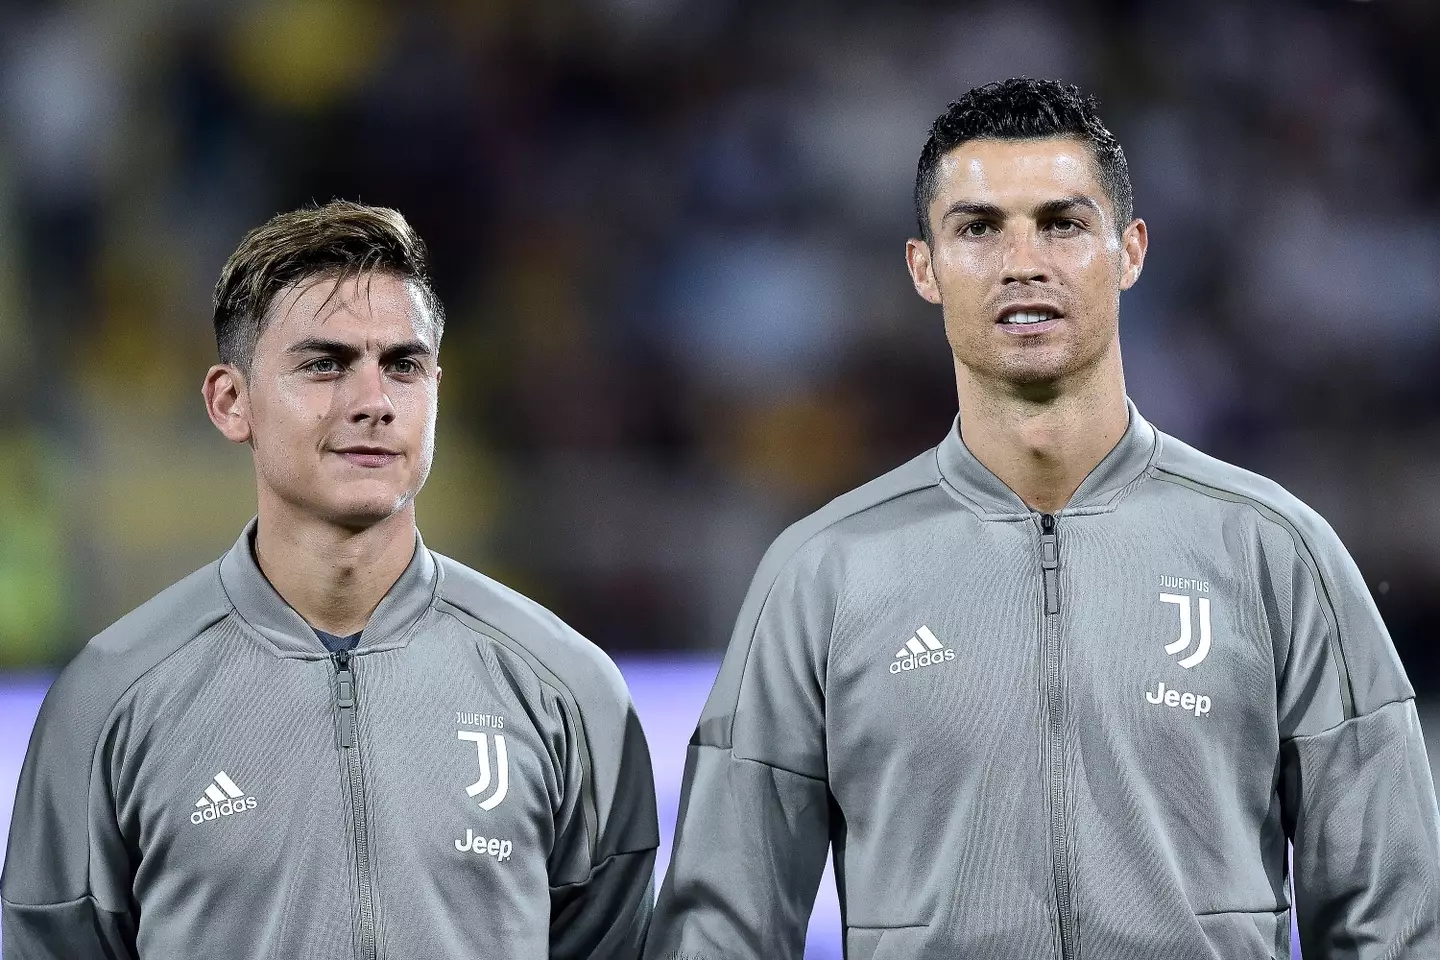 Dybala and Ronaldo played together at Juventus.